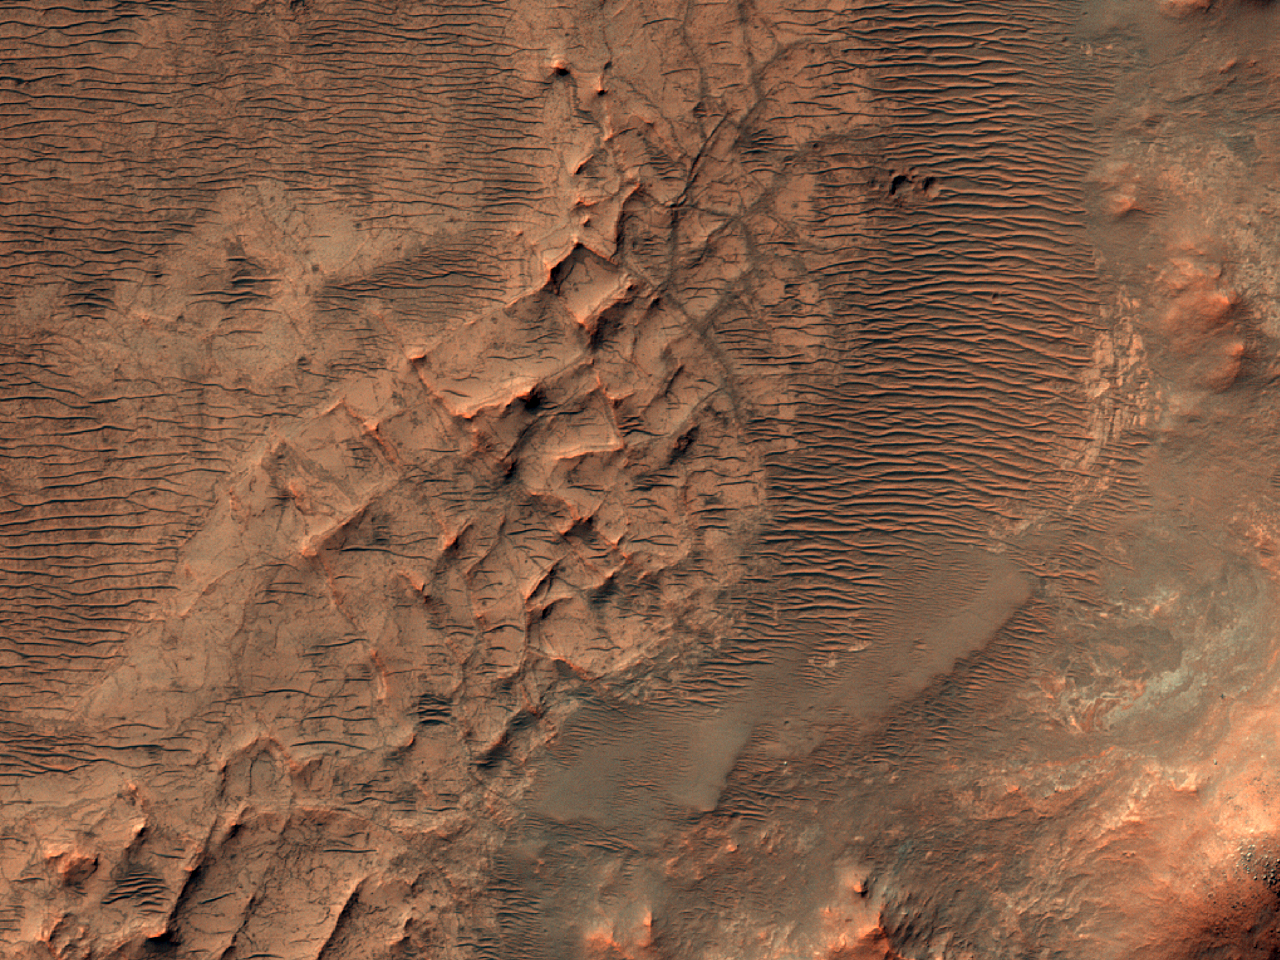 Bazroko norde de Hellas Planitia